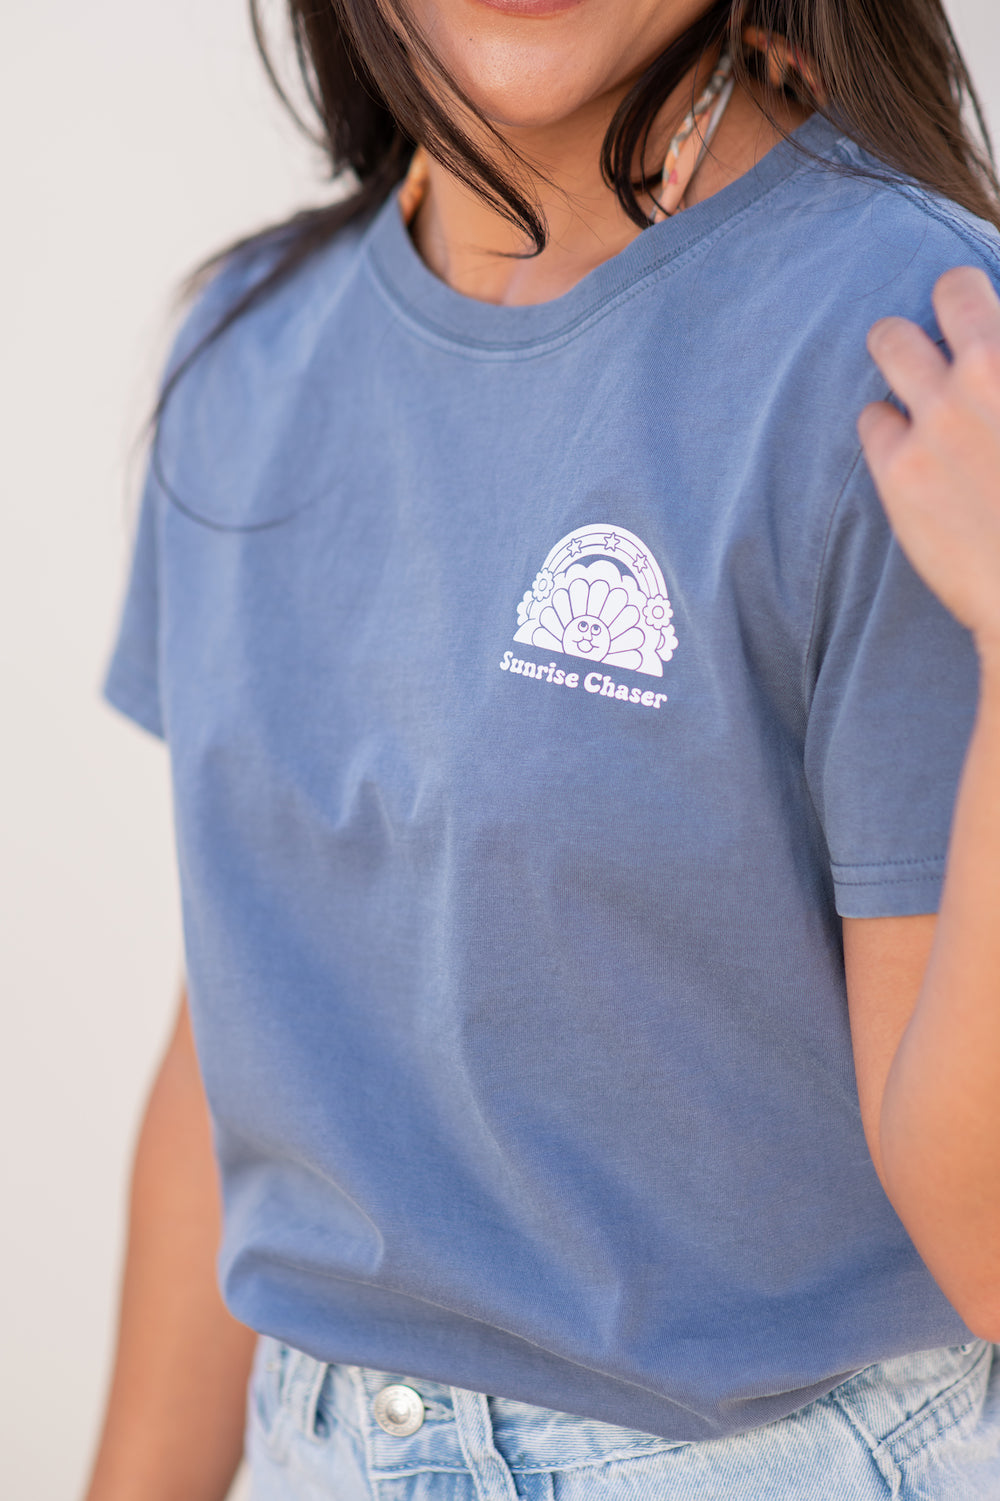 Sunrise Chaser Women's T-shirt